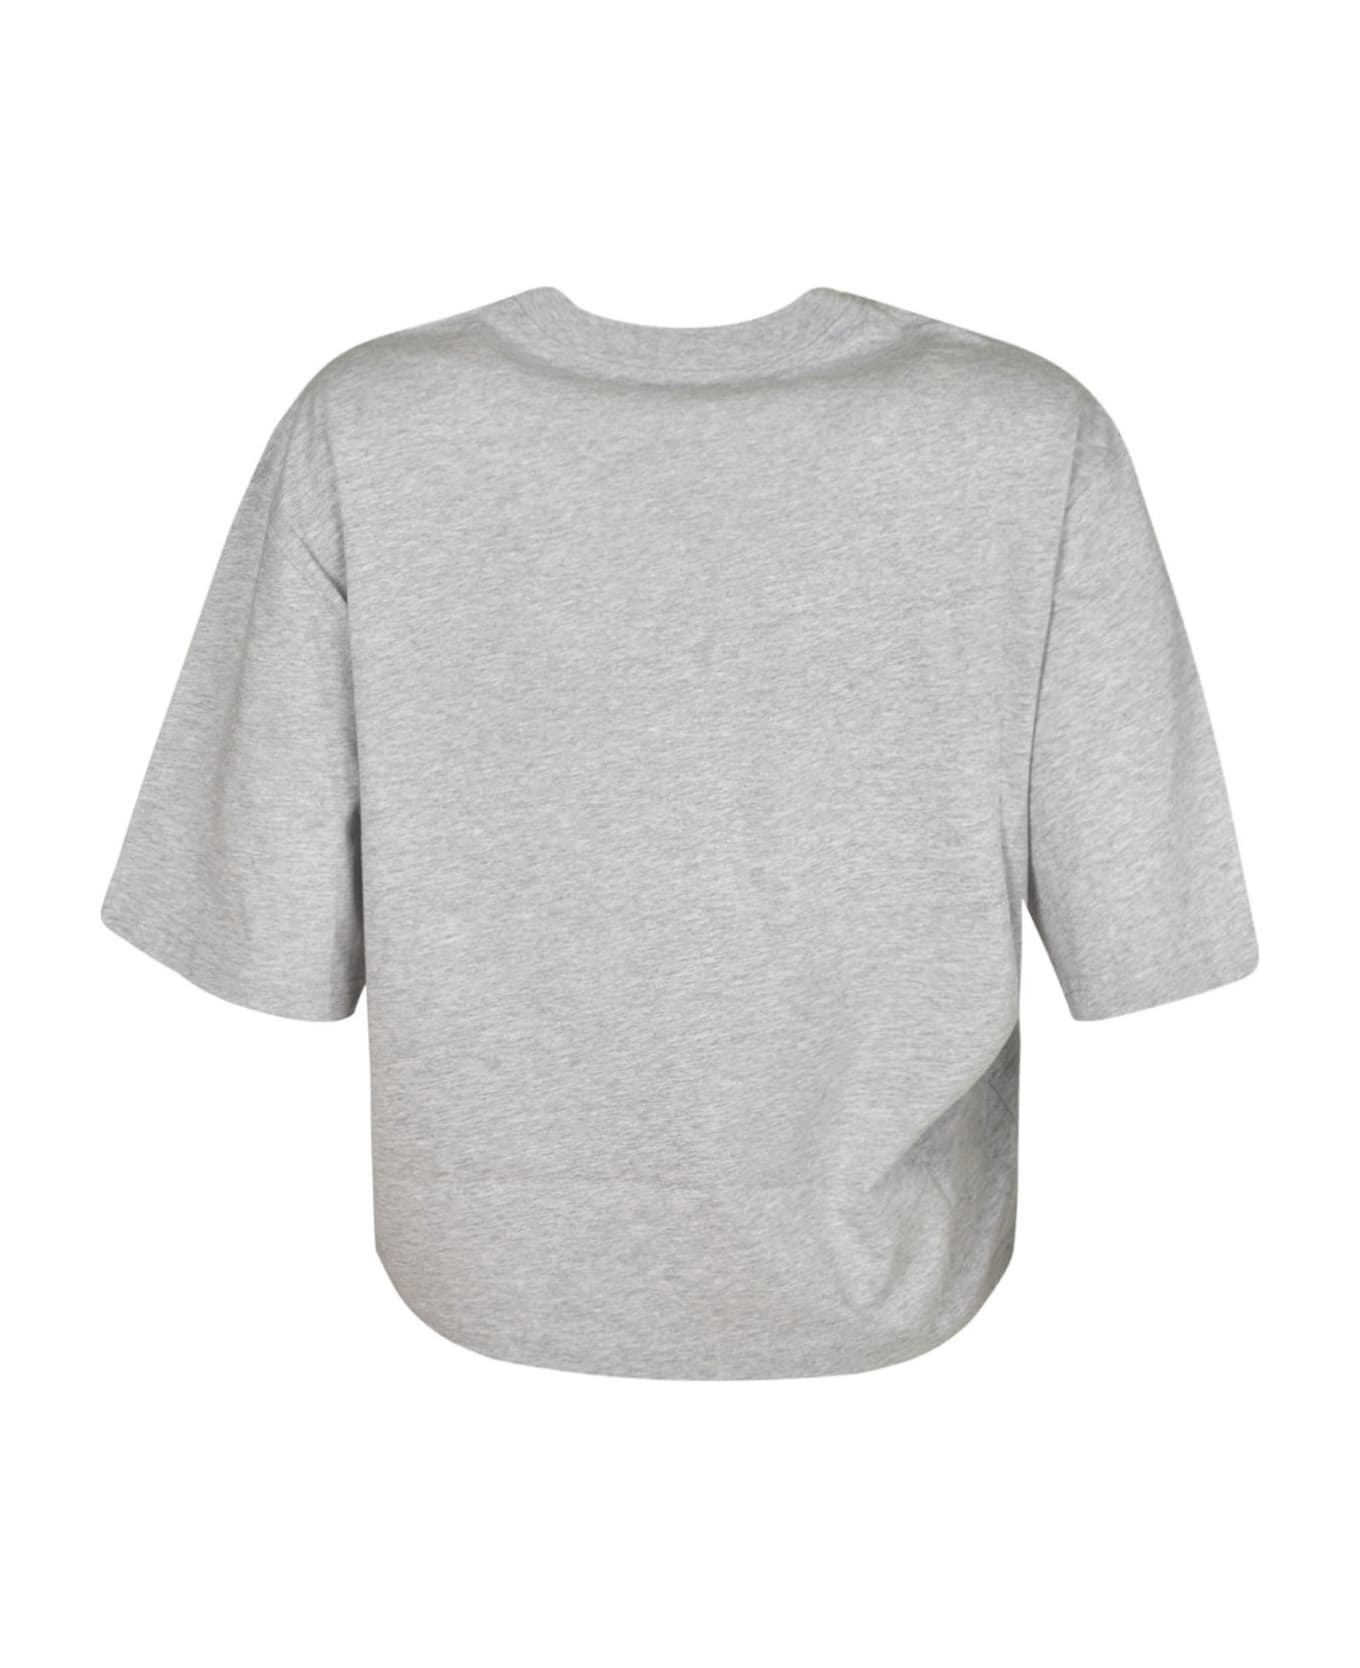 Moschino Bear Logo Cropped T-shirt - Grey